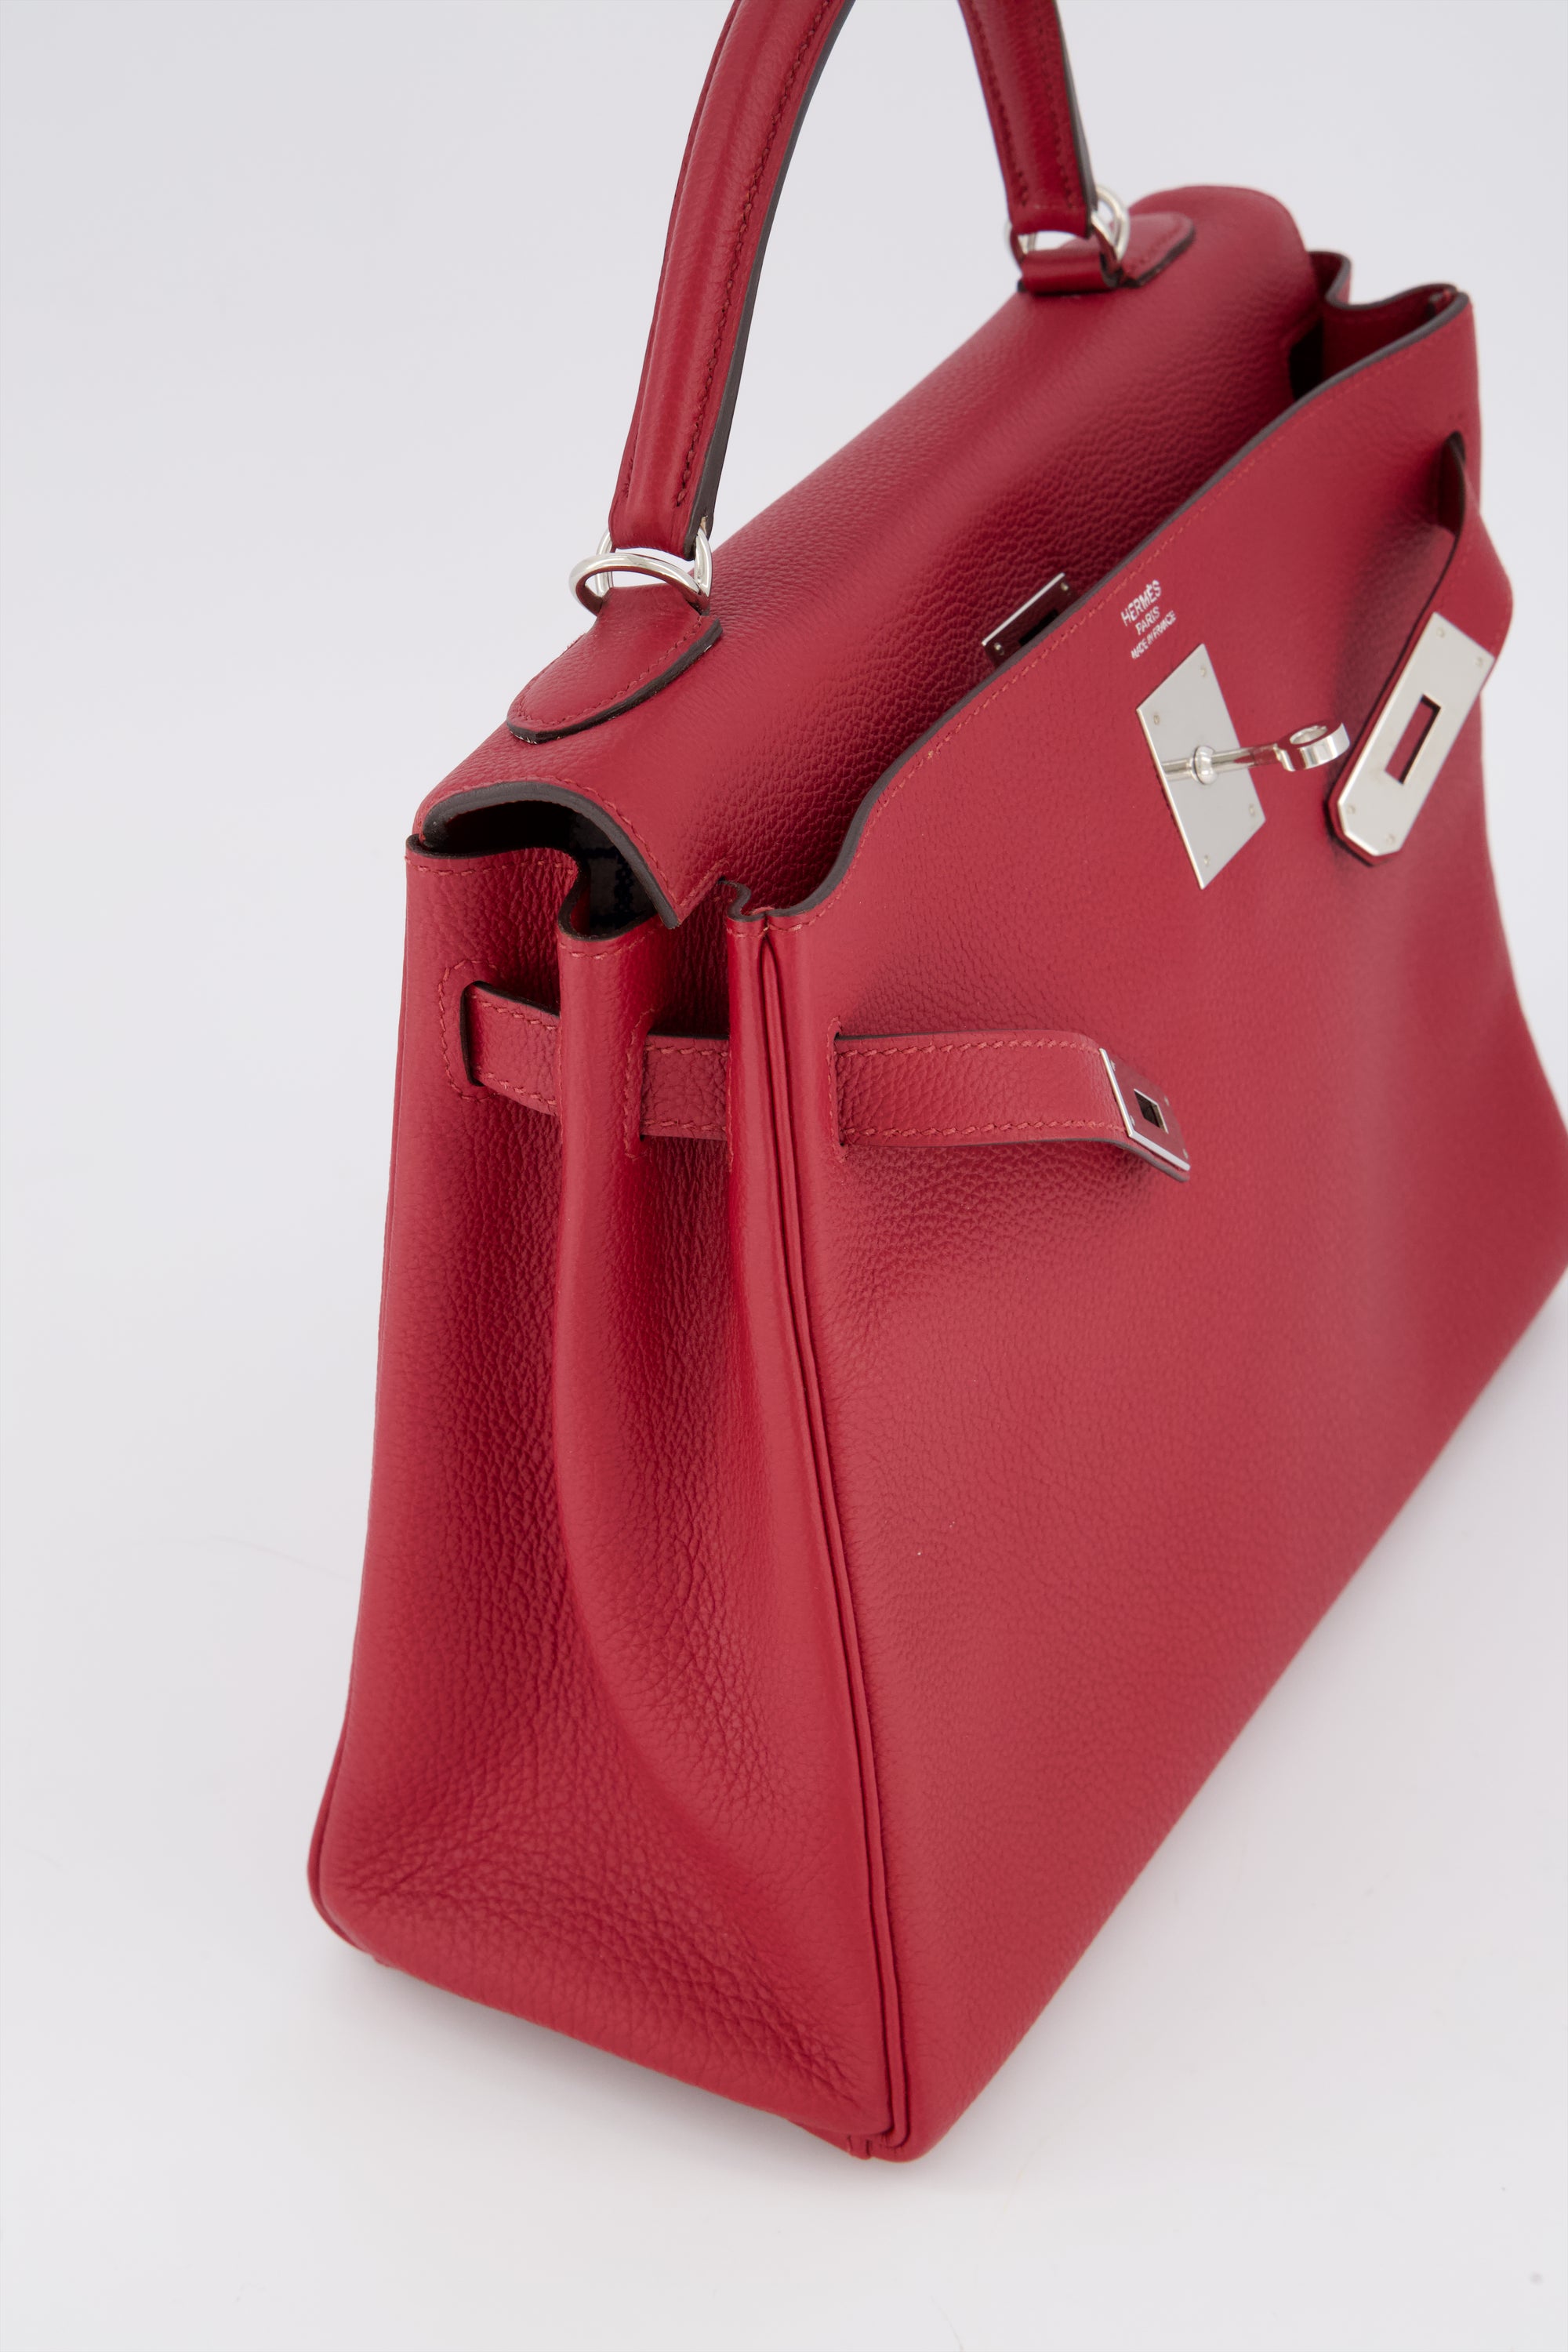 Hermes Kelly 32 Rouge Grenat Togo Leather Handbag With Palladium Hardware.